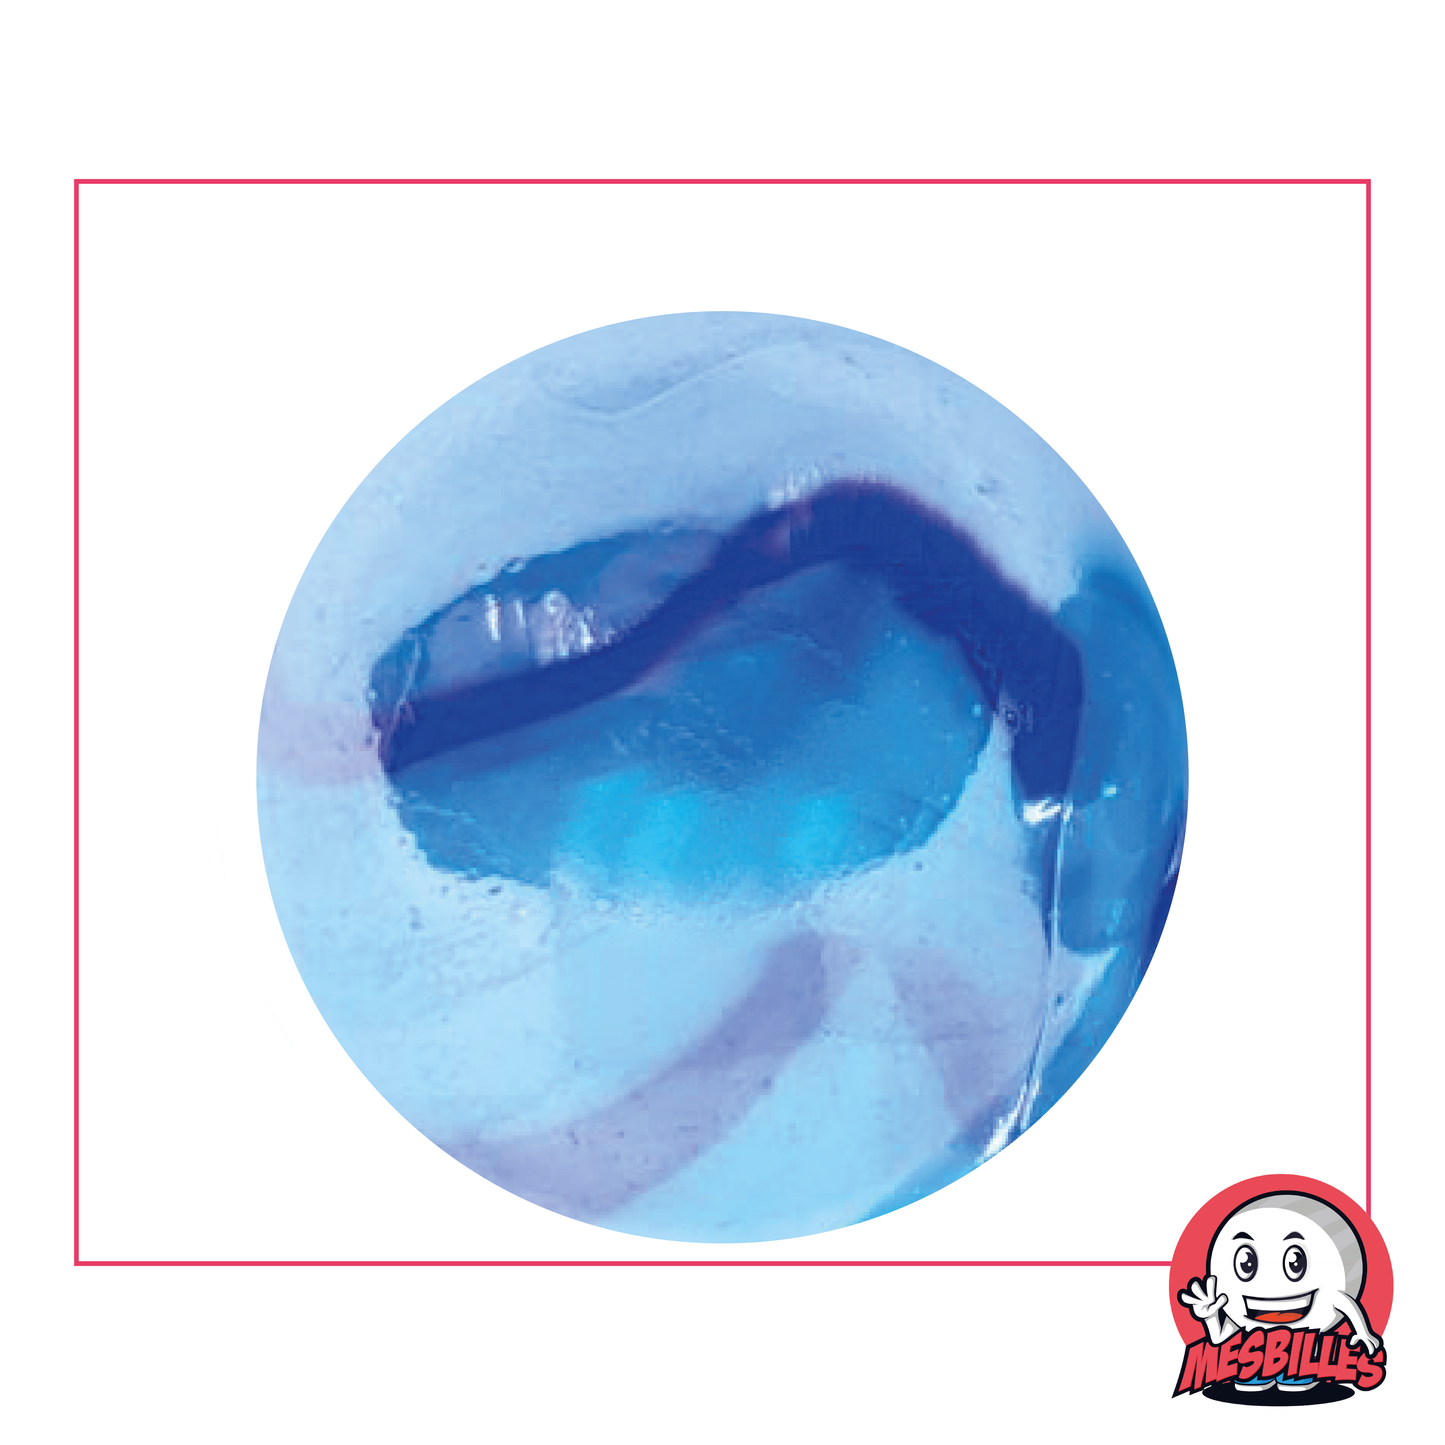 Très grande Bille Bleu de Chine de 42 mm, bille nacrée avec multiple nuances de bleus sur sa surface